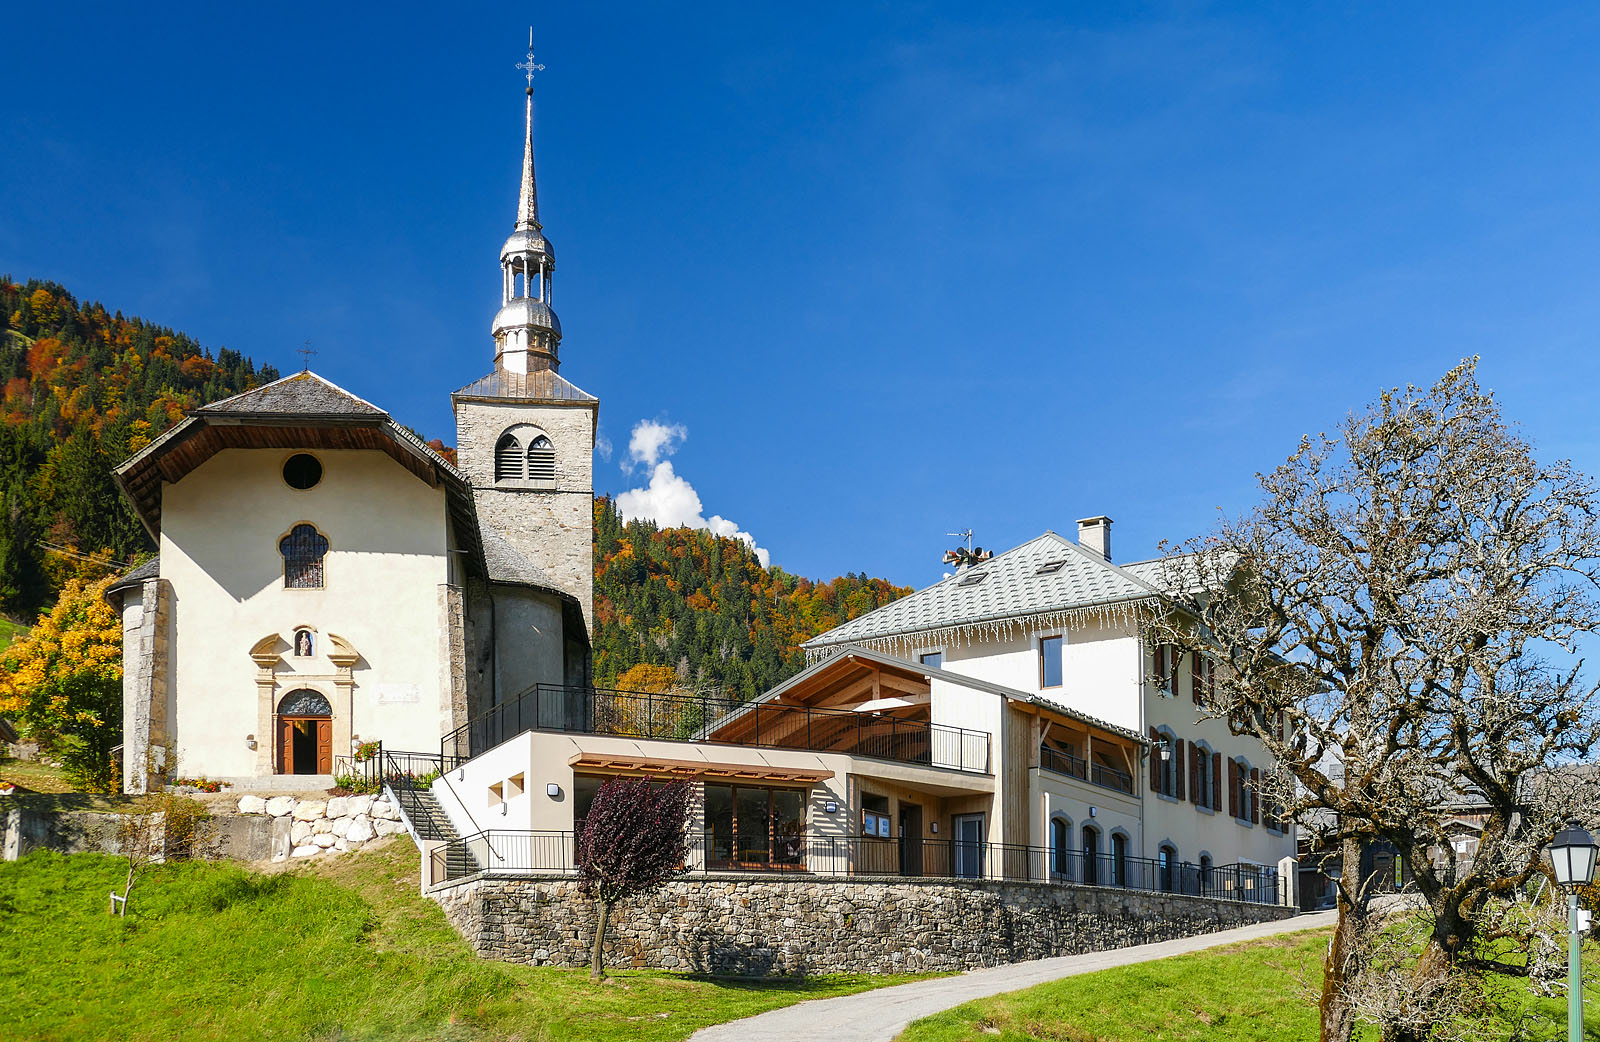 Photographe architecture en Savoie pour une collectivité : le village de Saint-Nicolas-la-Chappelle, en Val d'Arly